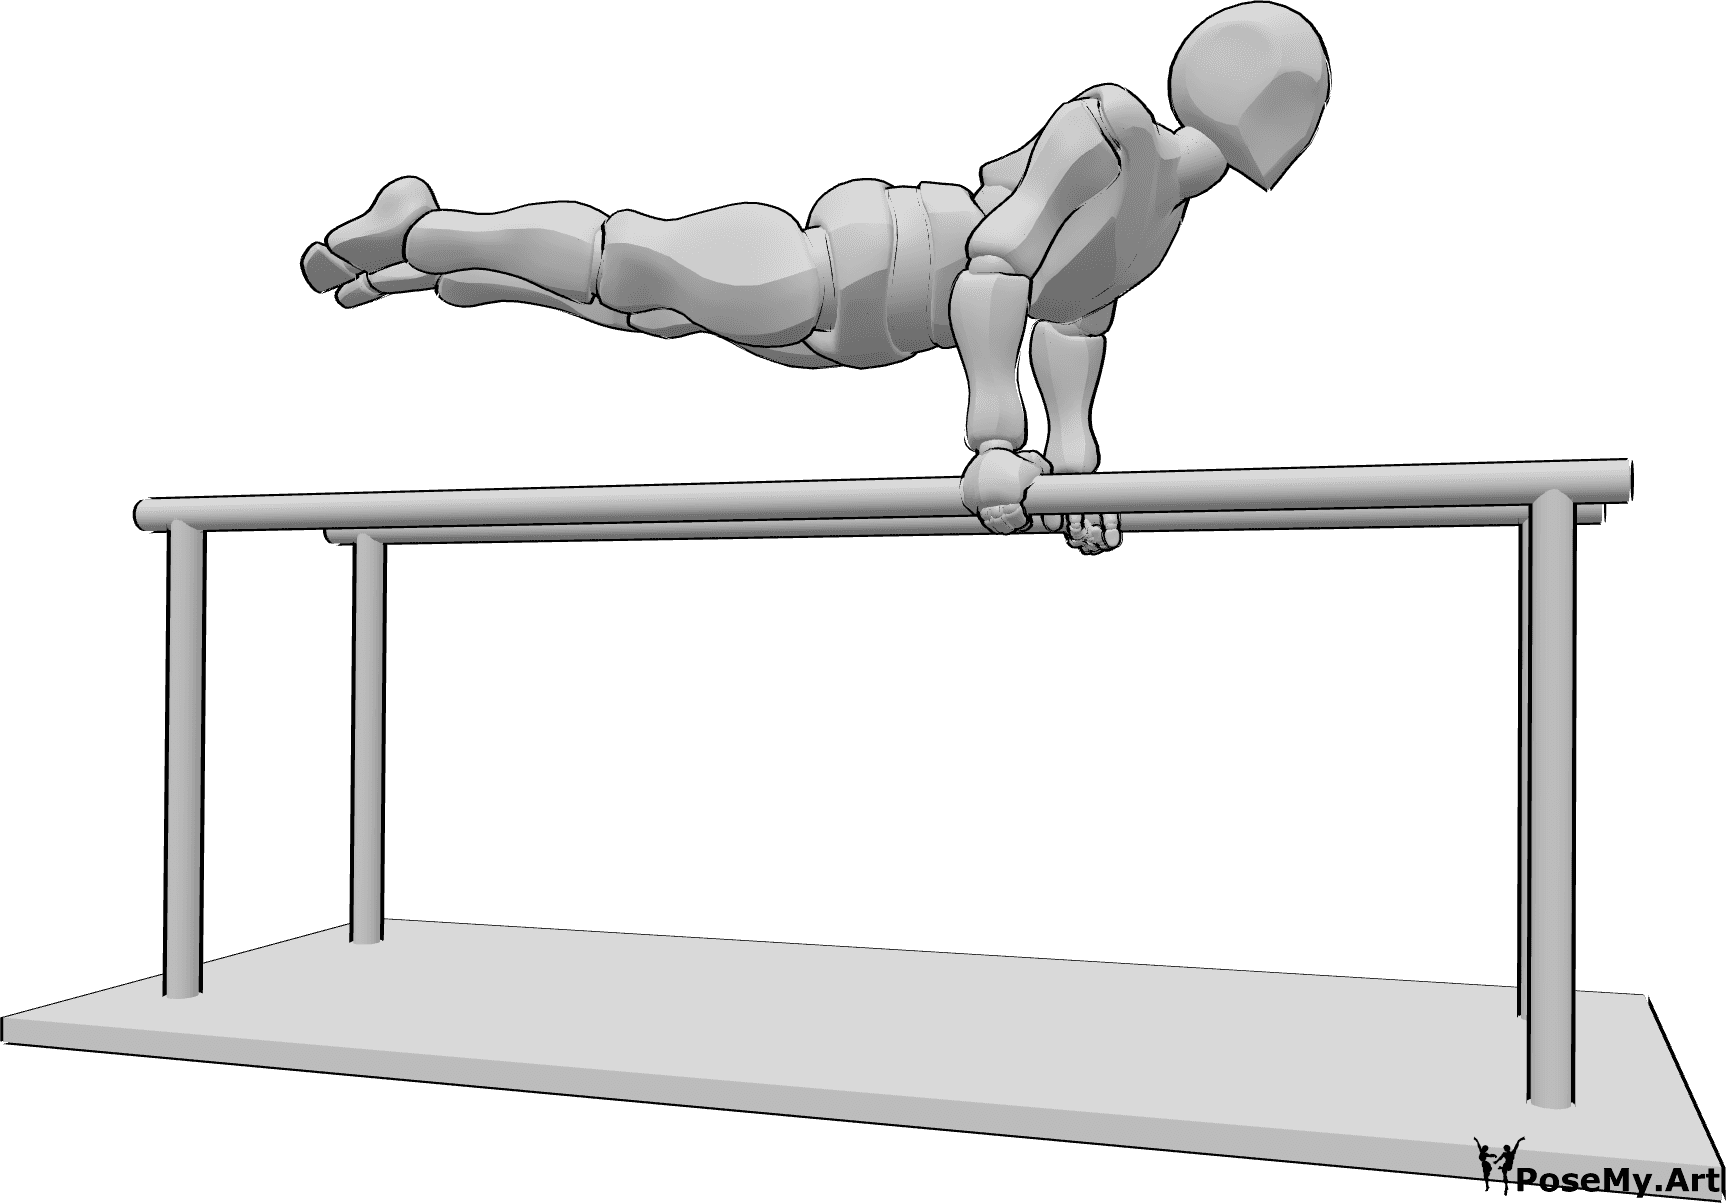 Posen-Referenz- Parallelbarren Handstandpose - Ein Mann turnt am Barren und hält dabei seinen Körper waagerecht in der Luft.